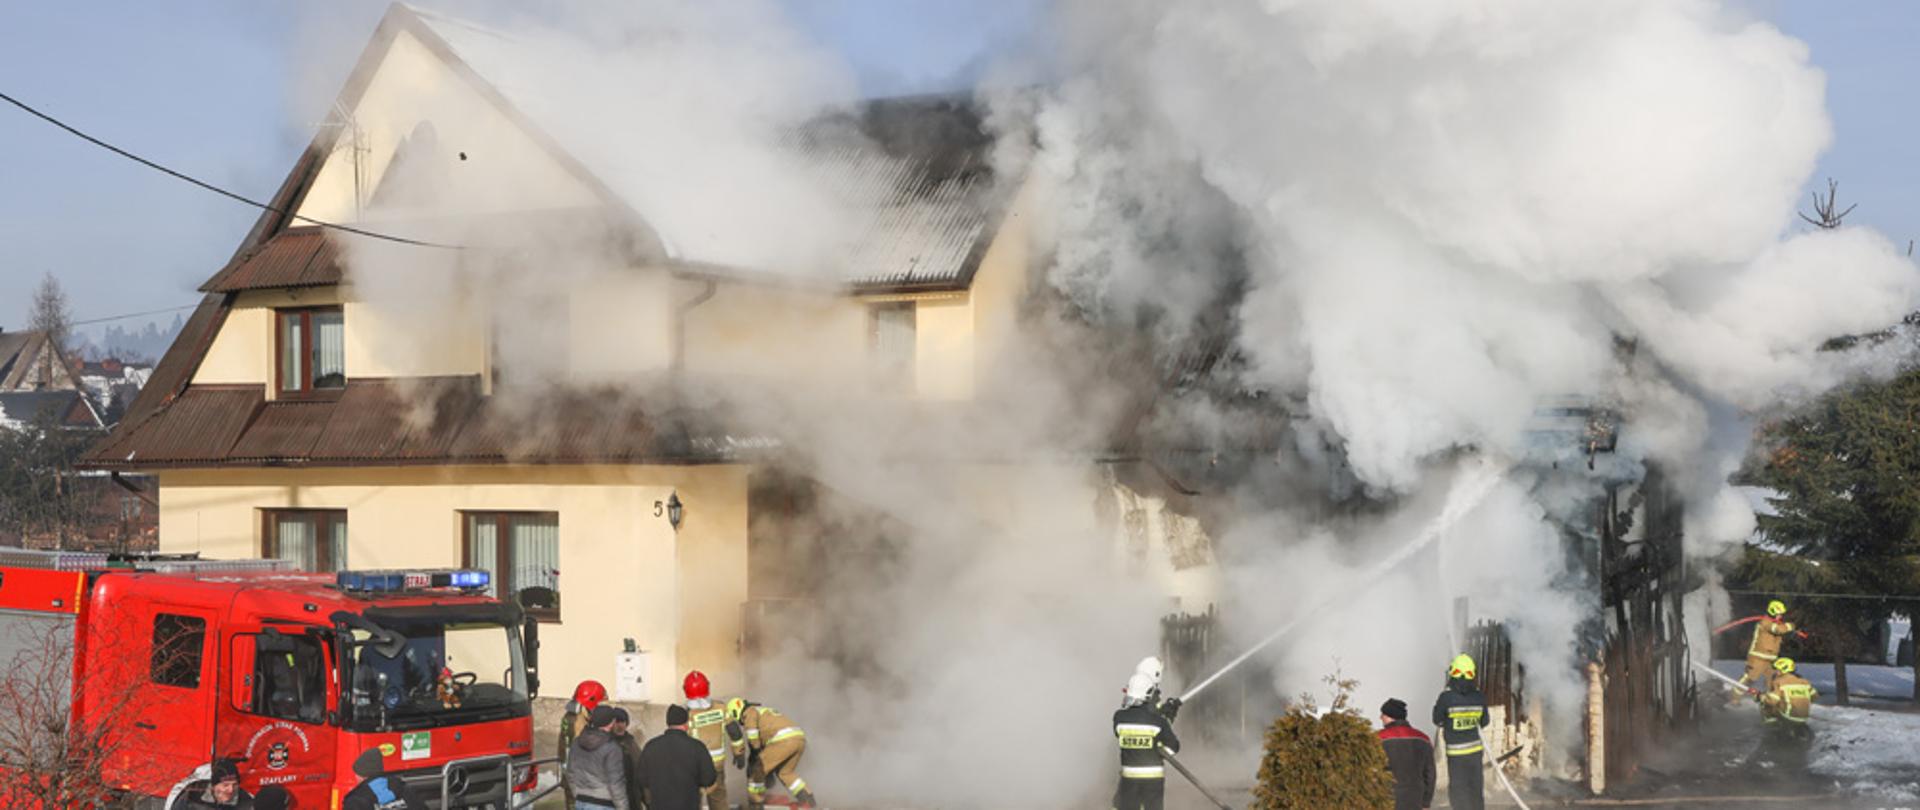 na zdjęciu palący się dom mieszkalny w miejscowości Szaflary strażacy gaszą pożar z boku budynku znajduje się czerwony samochód gaśniczy z budynku unoszą się kłęby białego i czarnego dymu działania prowadzone są w dzień